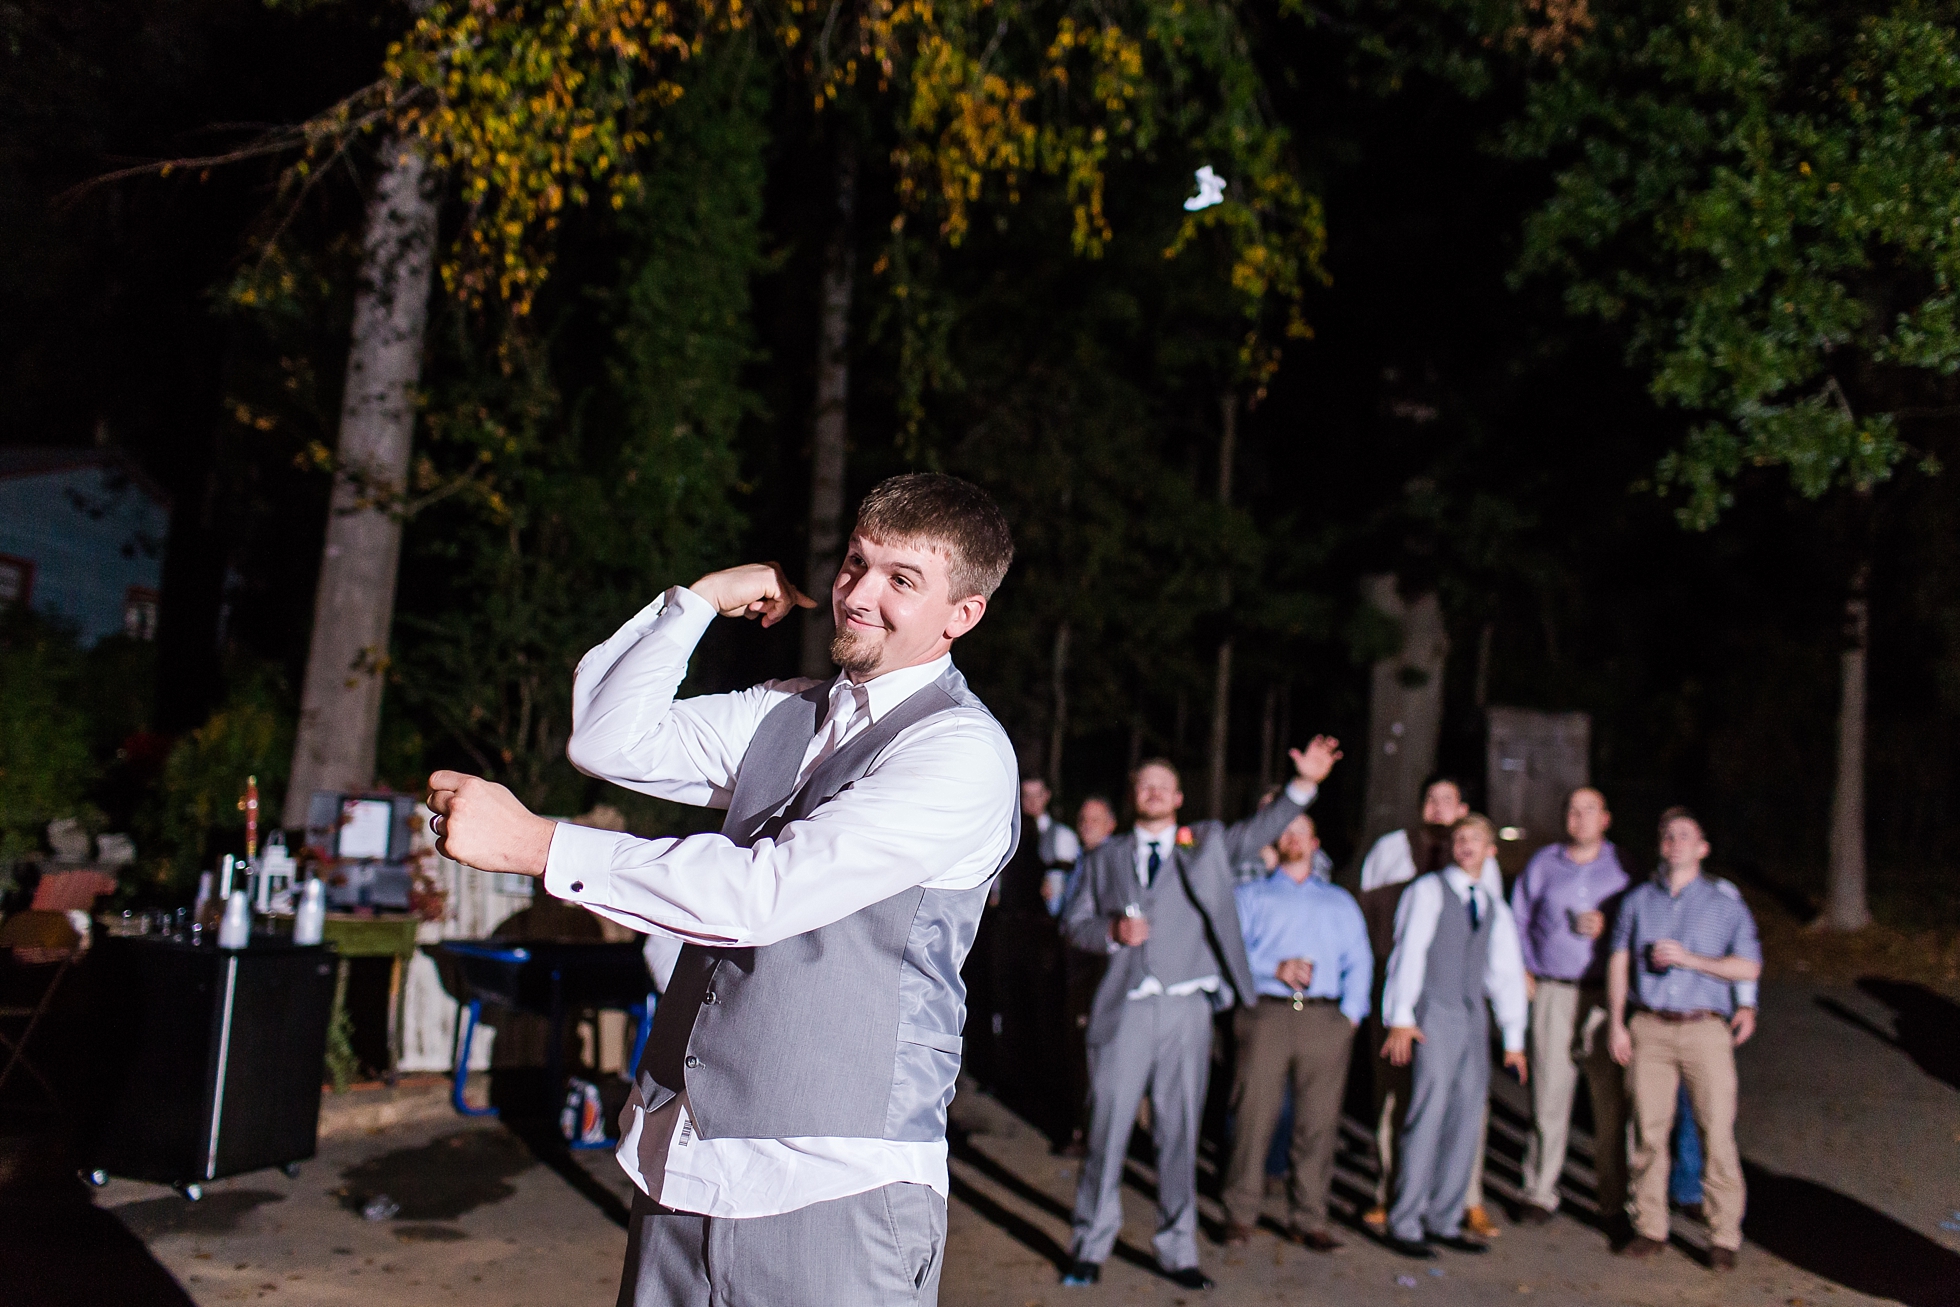 wedding garter toss